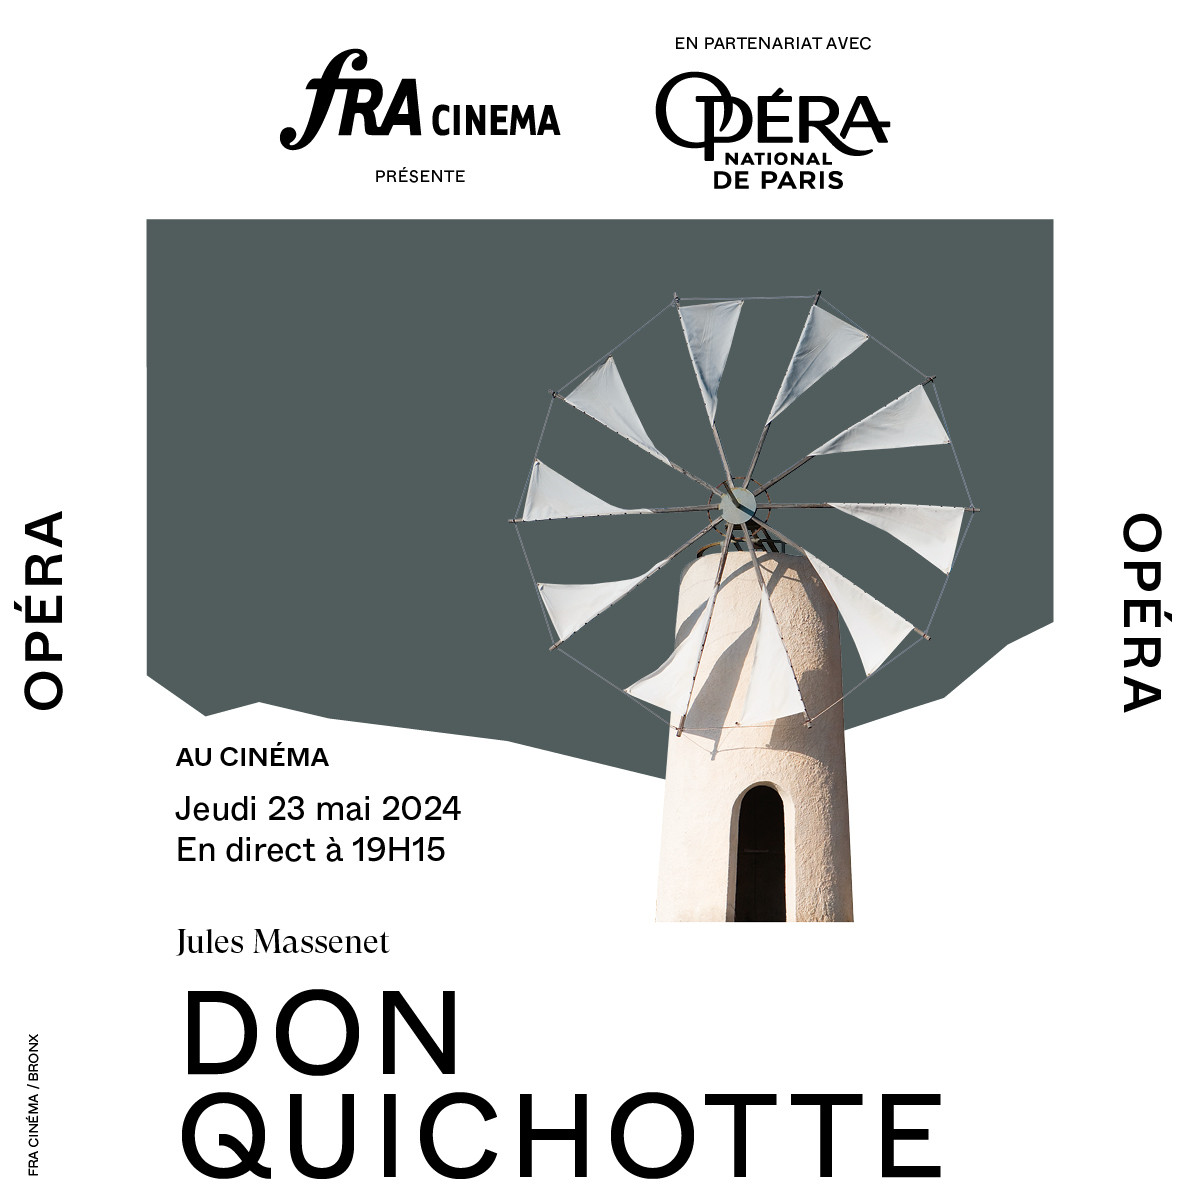 Ce soir, préparez-vous à être émerveillé par la retransmission en direct, dans votre cinéma, de l'Opéra Don Quichotte depuis l'Opéra national de Paris ! En partenariat avec @fracinema